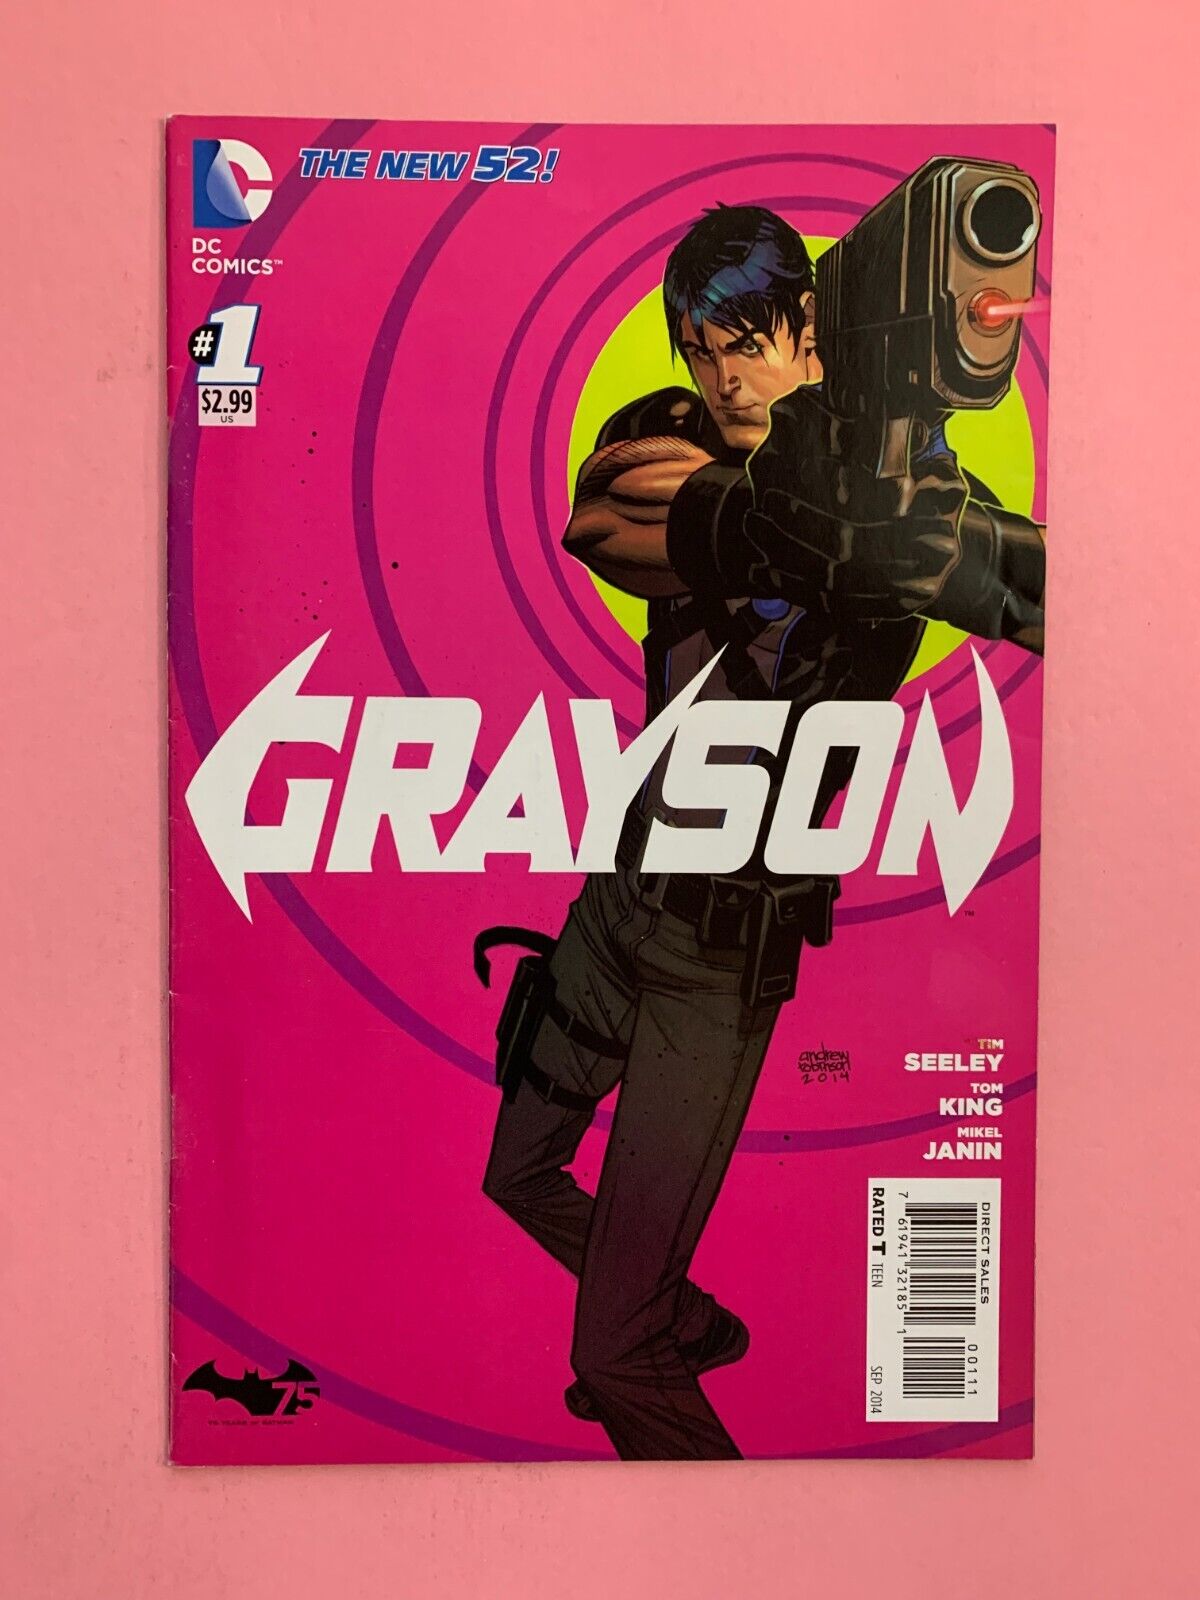 Grayson #1 - Sep 2014           (5521)